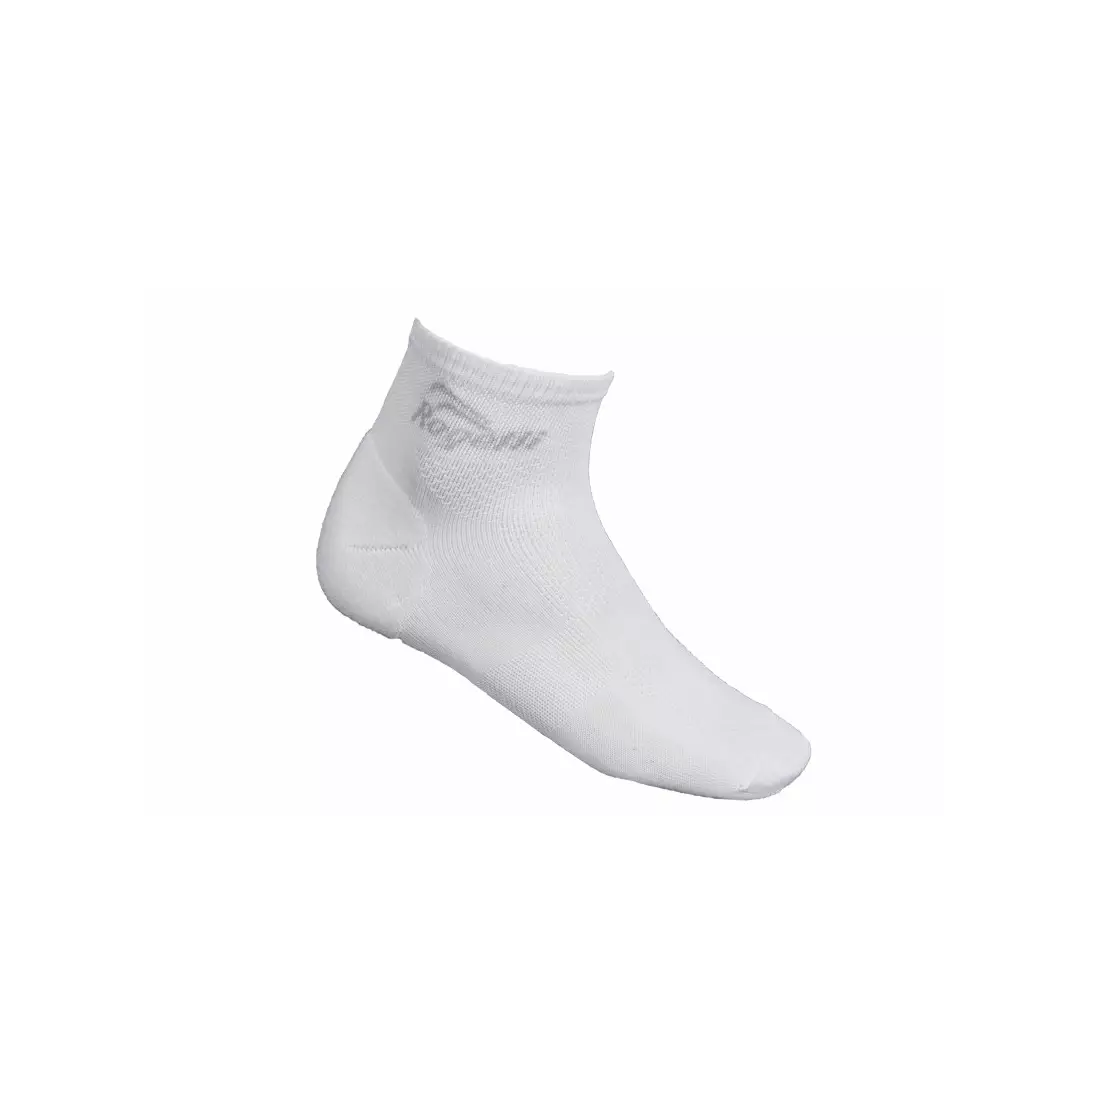 ROGELLI RRS-02 sports socks, white